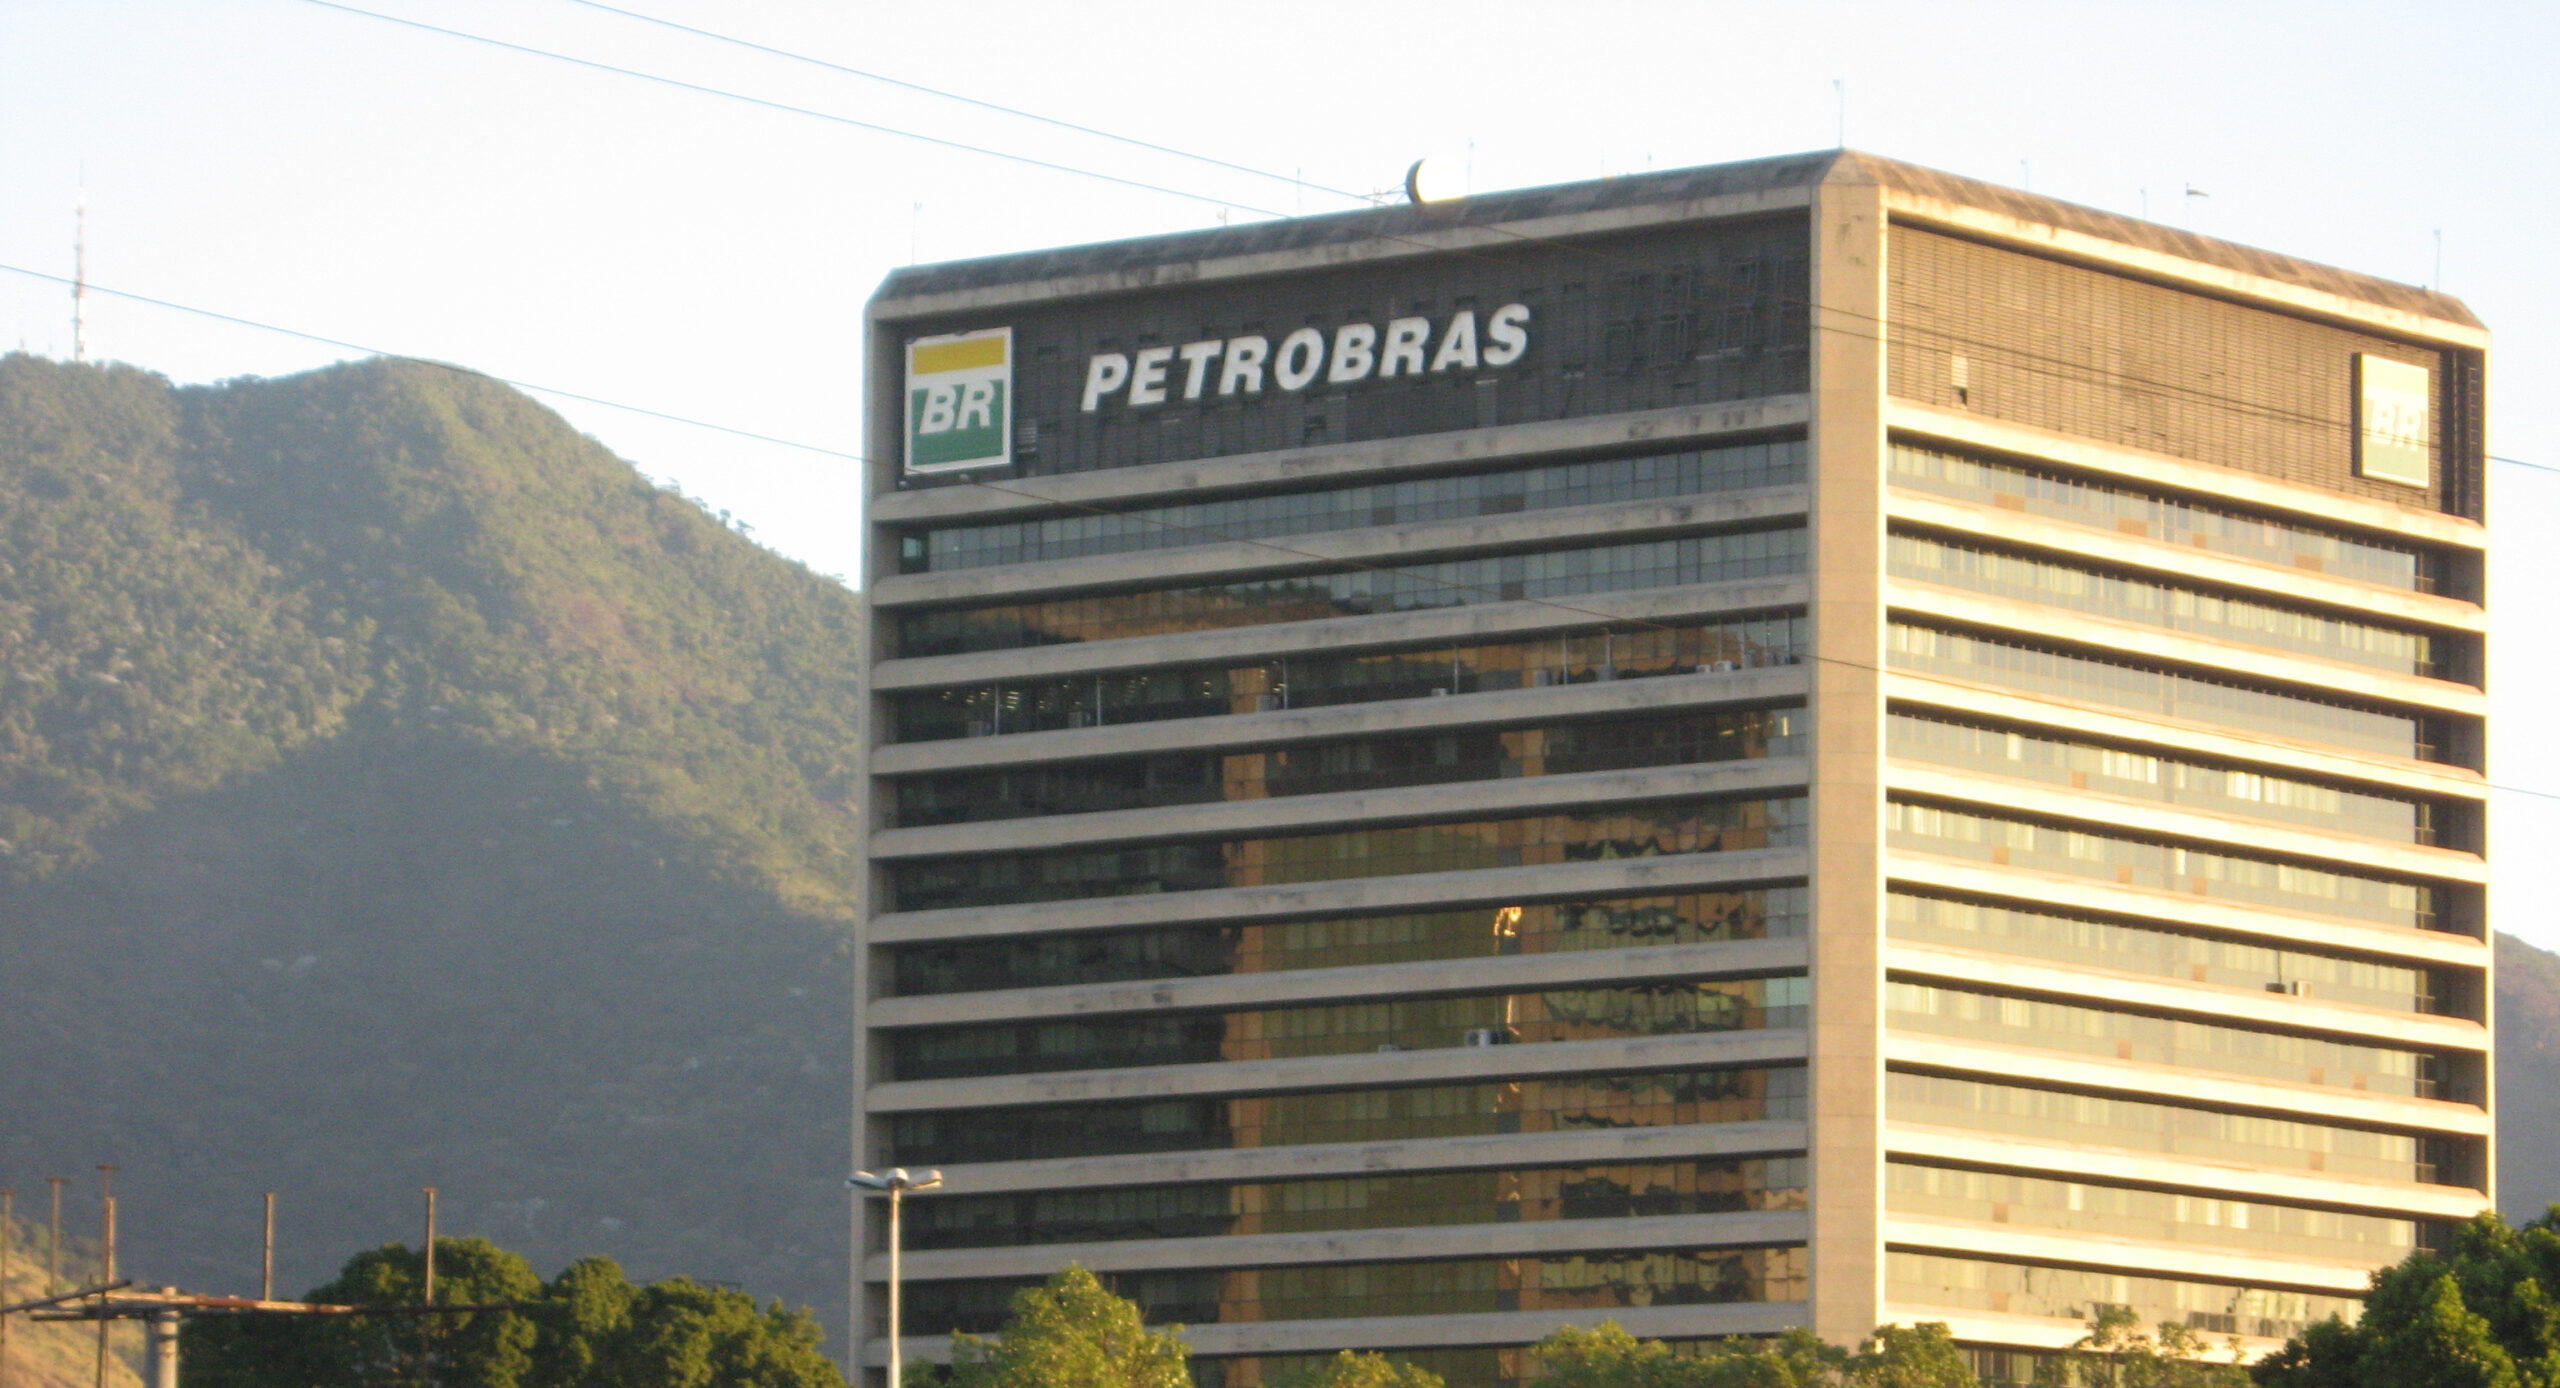 Caixa, Banco do Brasil e Petrobras não serão privatizados, diz secretário